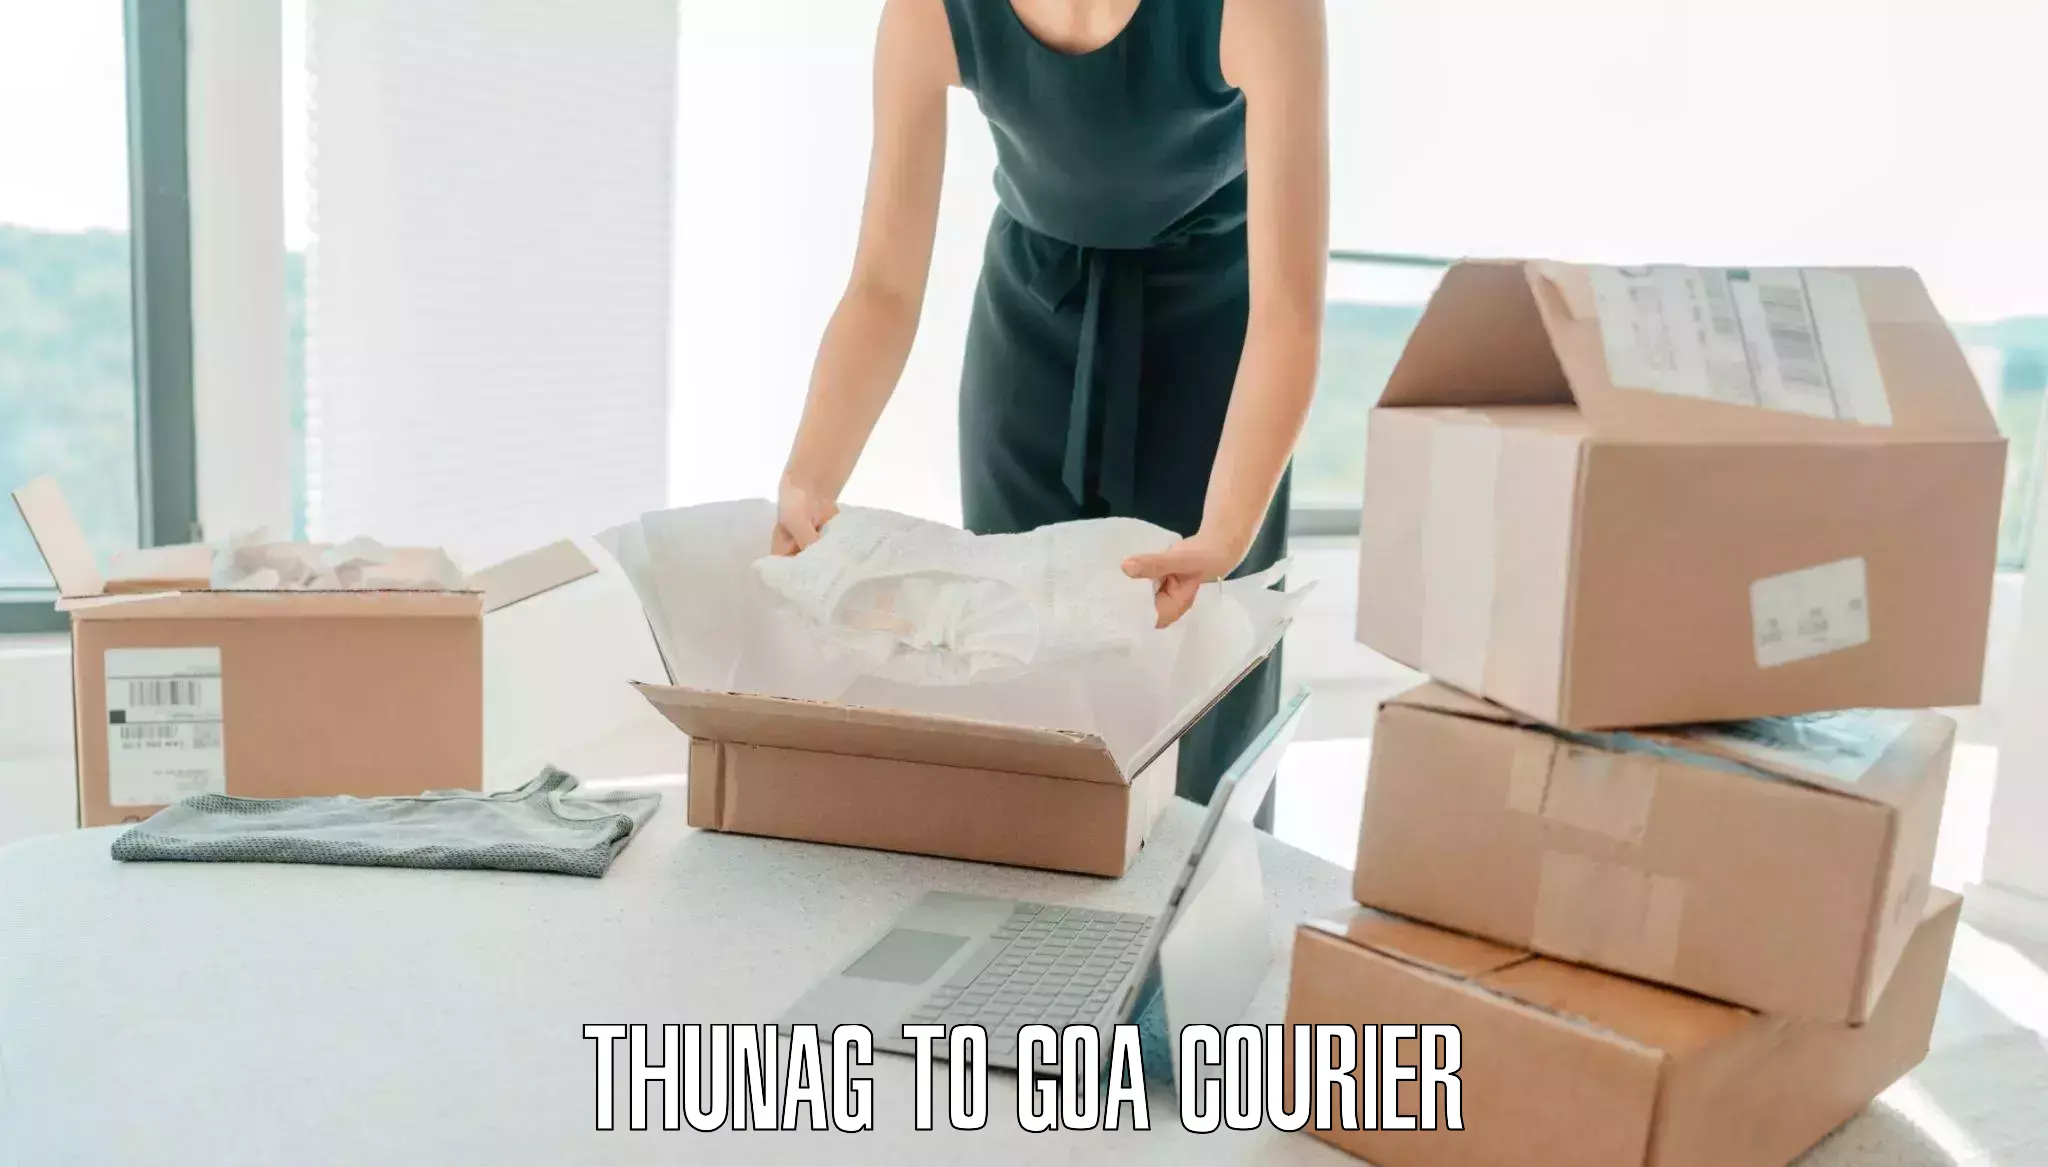 Luggage transport pricing Thunag to Goa University